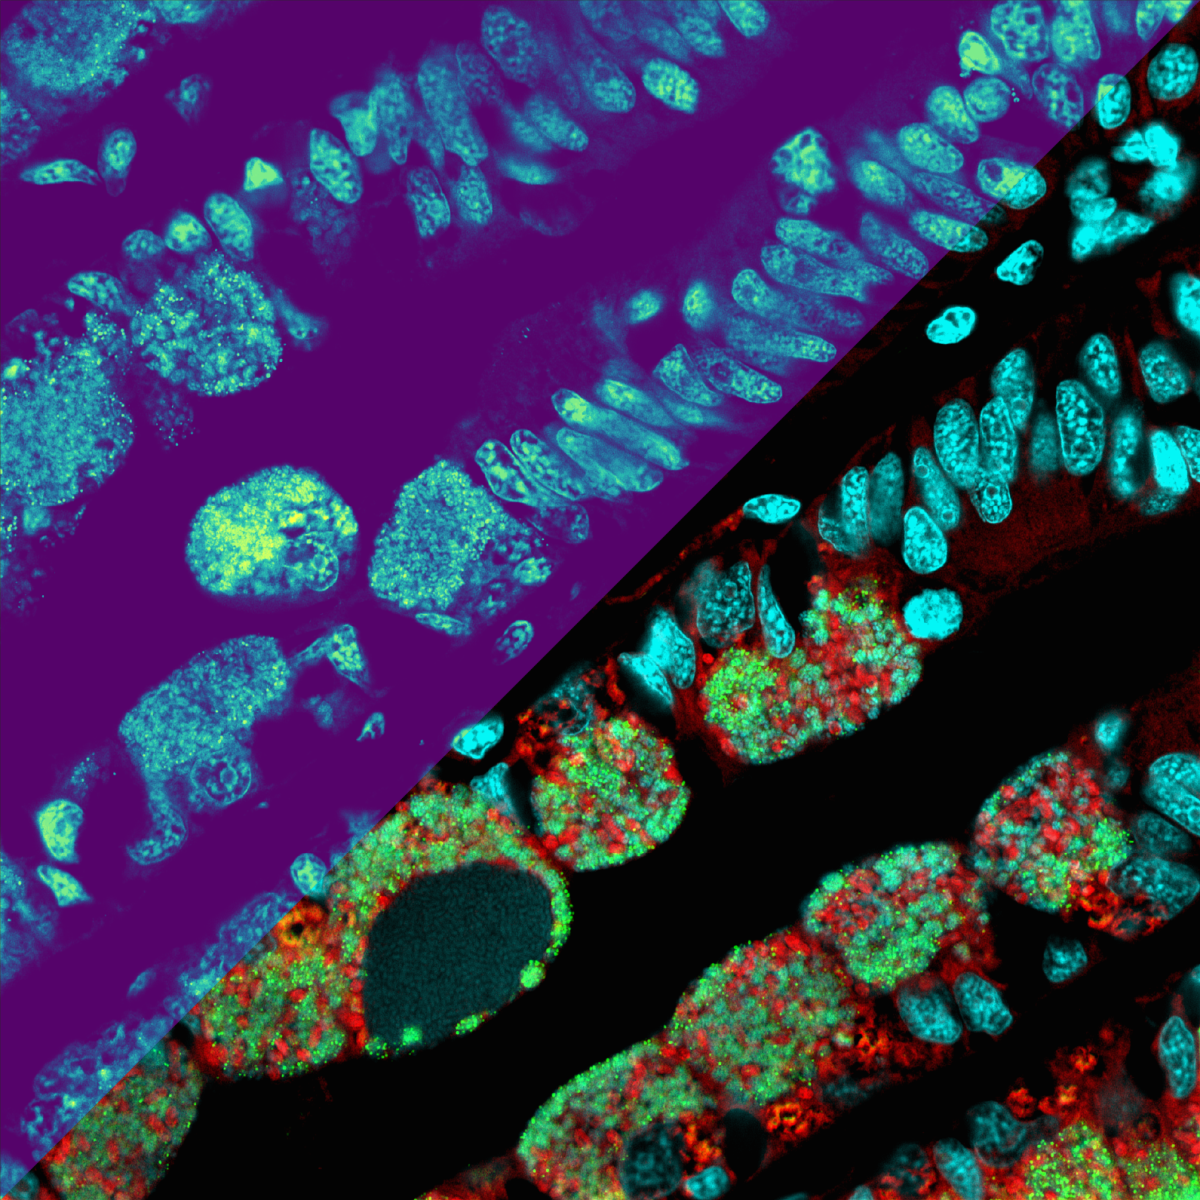 Die Metabolitenverteilungen als Heatmap (oberer linker Teil der Abbildung): je heller die Farbe, desto höher die Konzentration der Metabolite (Mikroskopie-MSI-Nachbildung zur Veranschaulichung). Die untere rechte Seite des Bildes zeigt mikroskopische Details der Mikroben (in Rot und Grün) und der Muschelzellkerne (Cyan). (© Max-Planck-Institut für Marine Mikrobiologie, B. Geier)